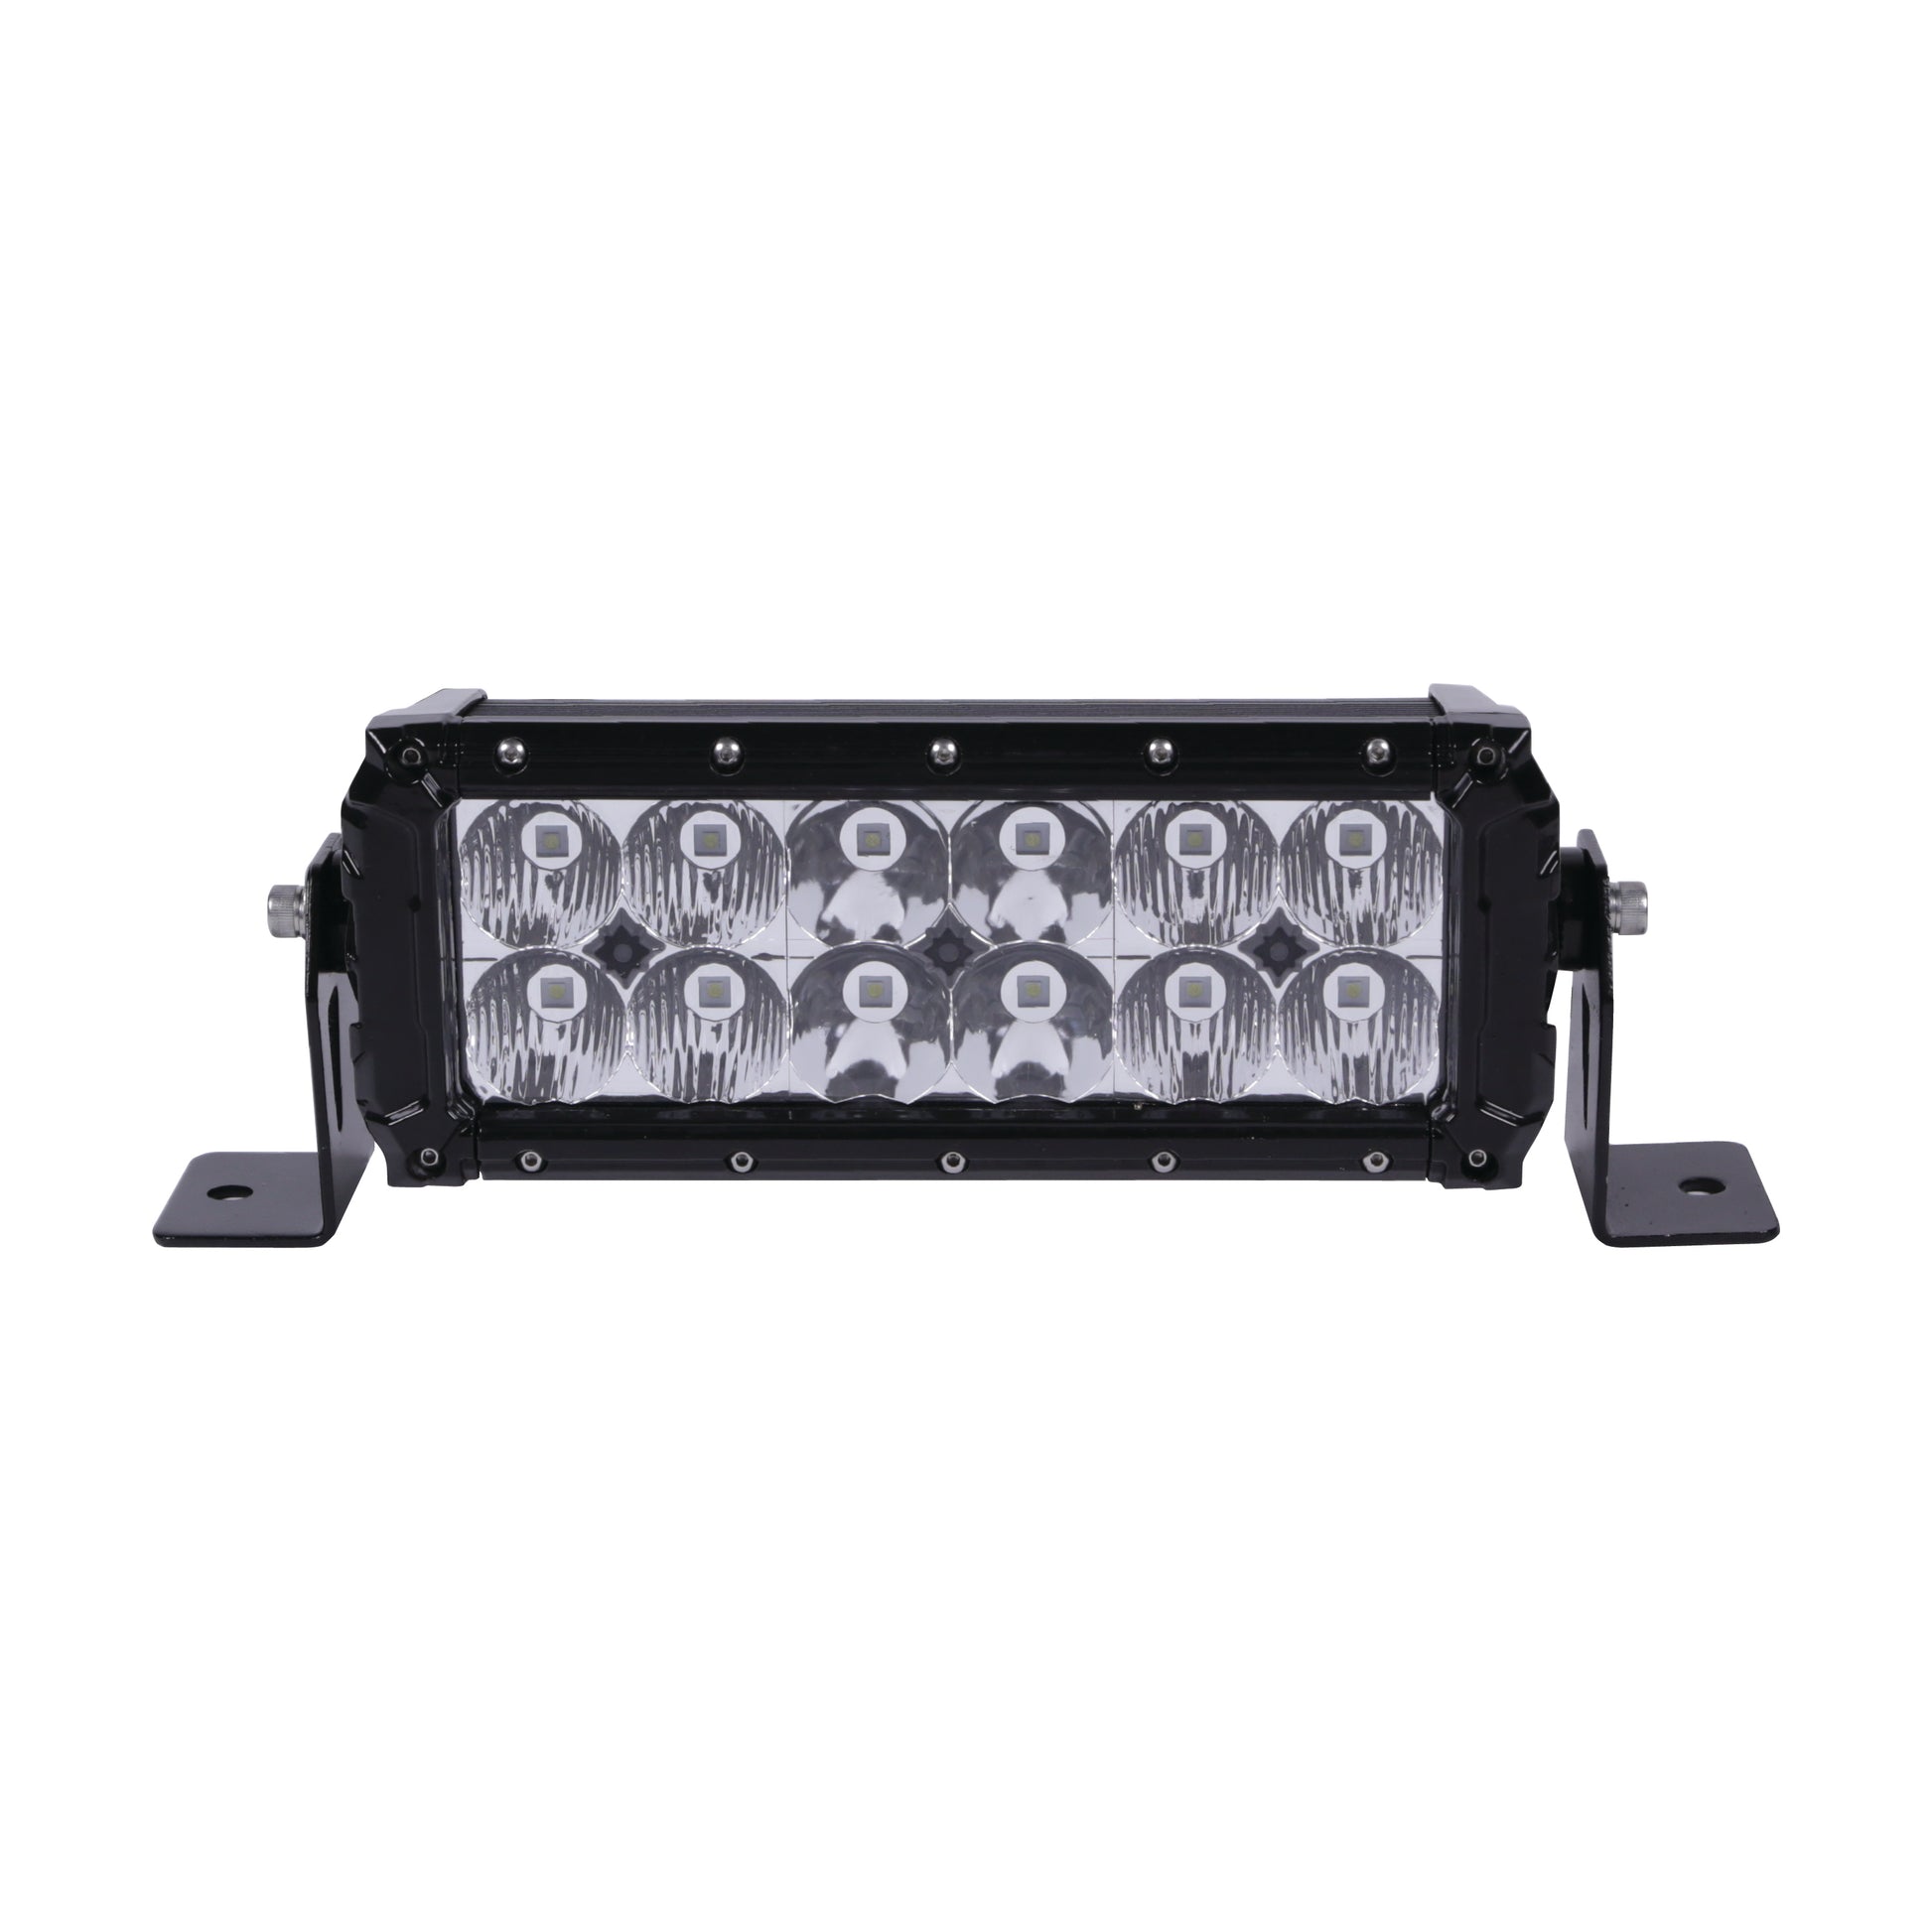 Alpena TREKTEC 9 LED Bar, 12V, Model 77627, Universal Fit for Cars,  Trucks, SUVs, Vans 